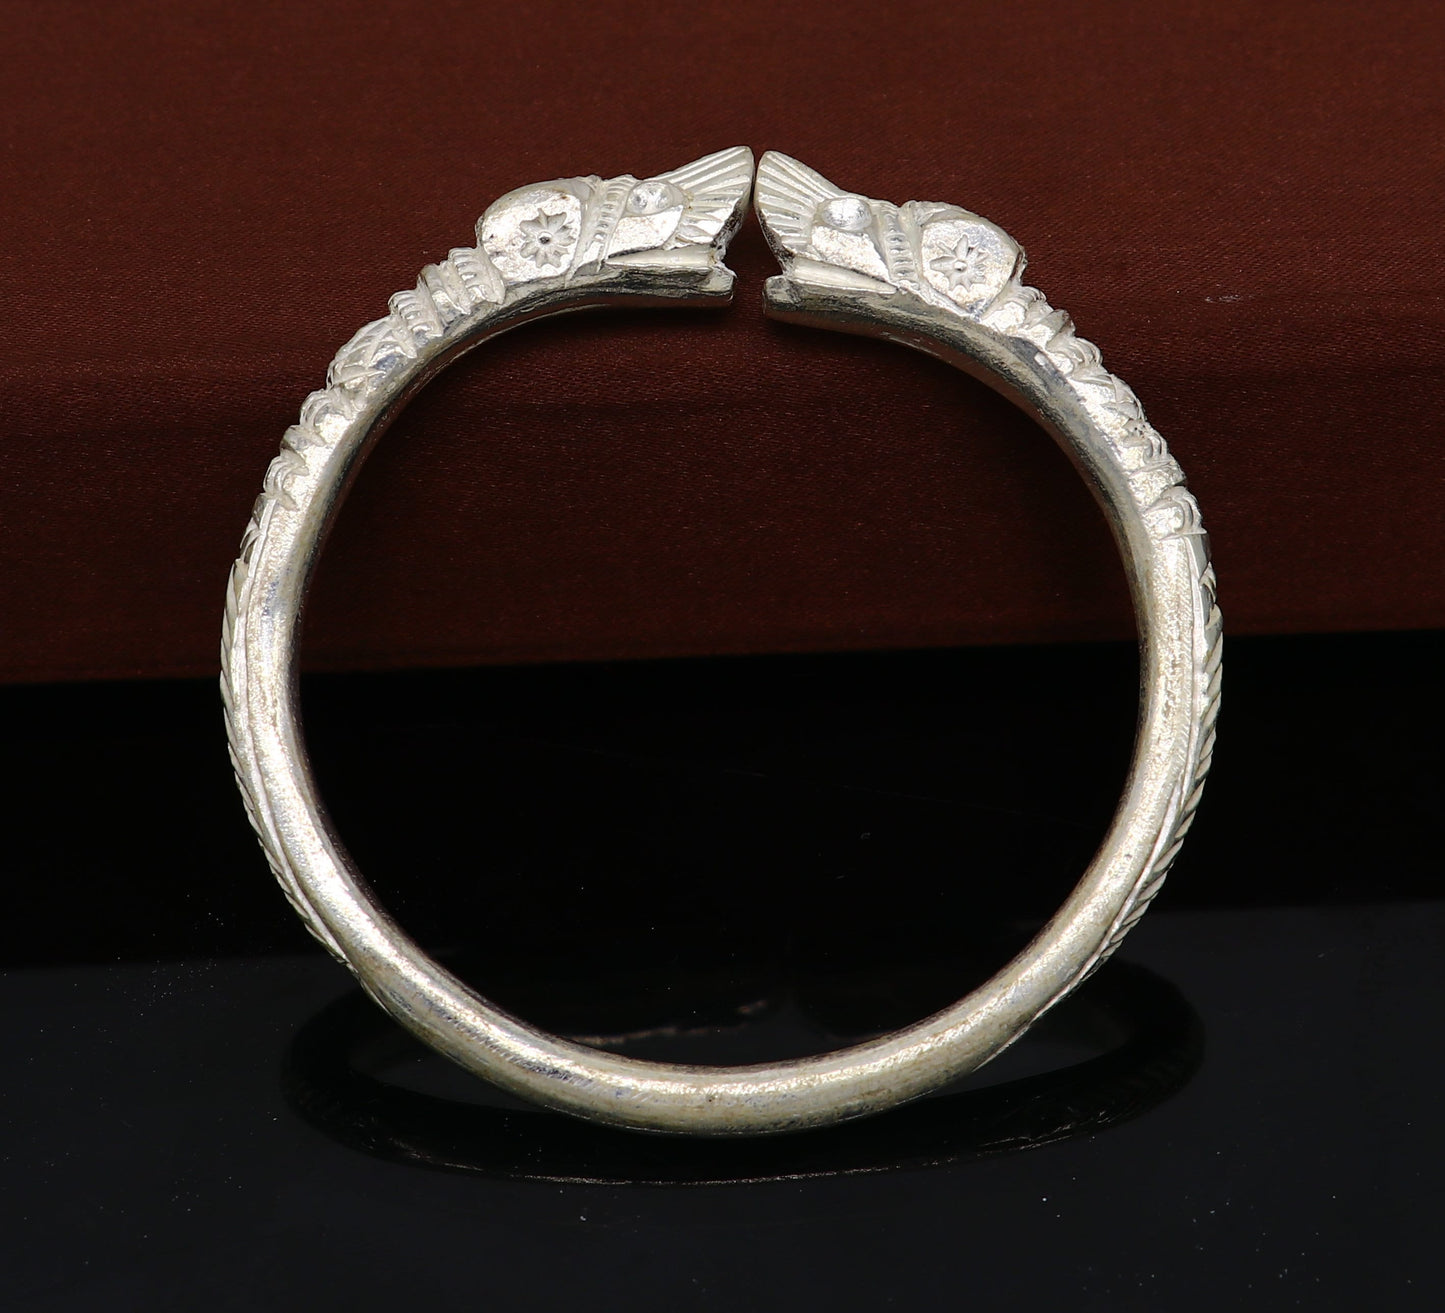 Vintage design handmade Solid silver men's bangle bracelet adjustable kada solid crocodile face tribal design bangle gifting kada nssk441 - TRIBAL ORNAMENTS